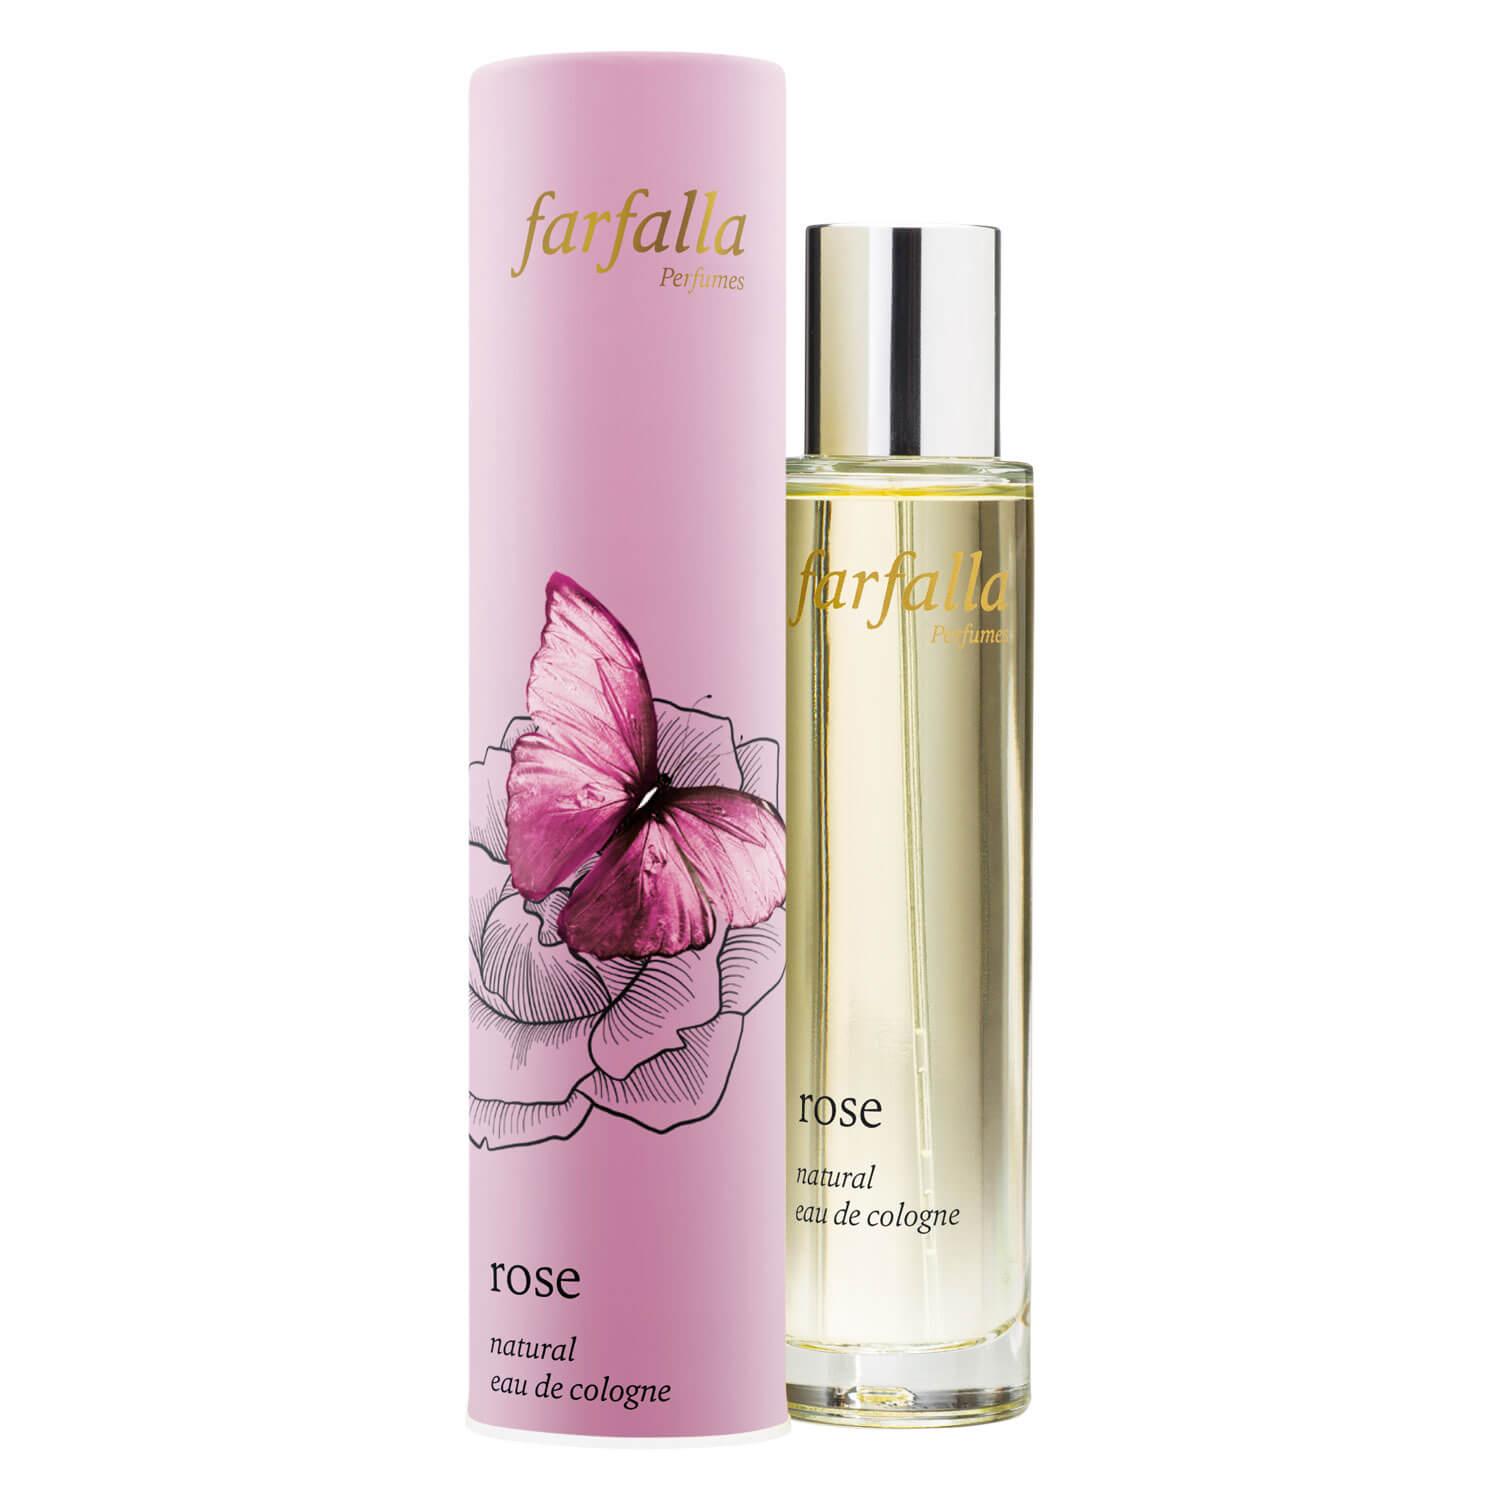 Farfalla Fragrance - Rose Natural Eau de Cologne